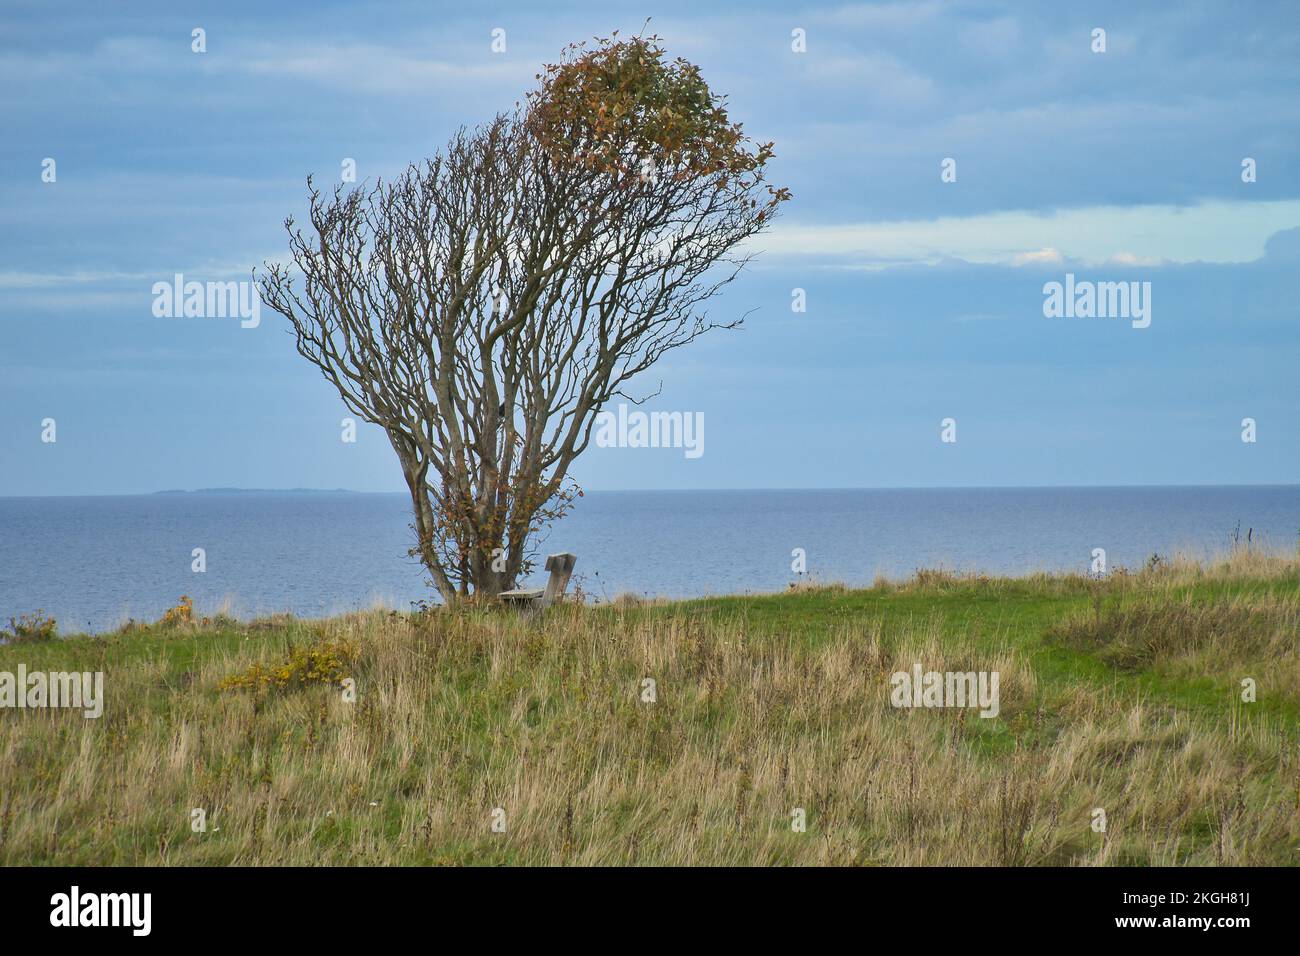 Der Baum ist vom Wind gebeugt, mit einer Bank auf einer Klippe am Meer. Blick in Dänemark auf dem Kattegatt. Pause während einer Wanderung. Landschaftsaufnahmen aus der Ostsee Stockfoto